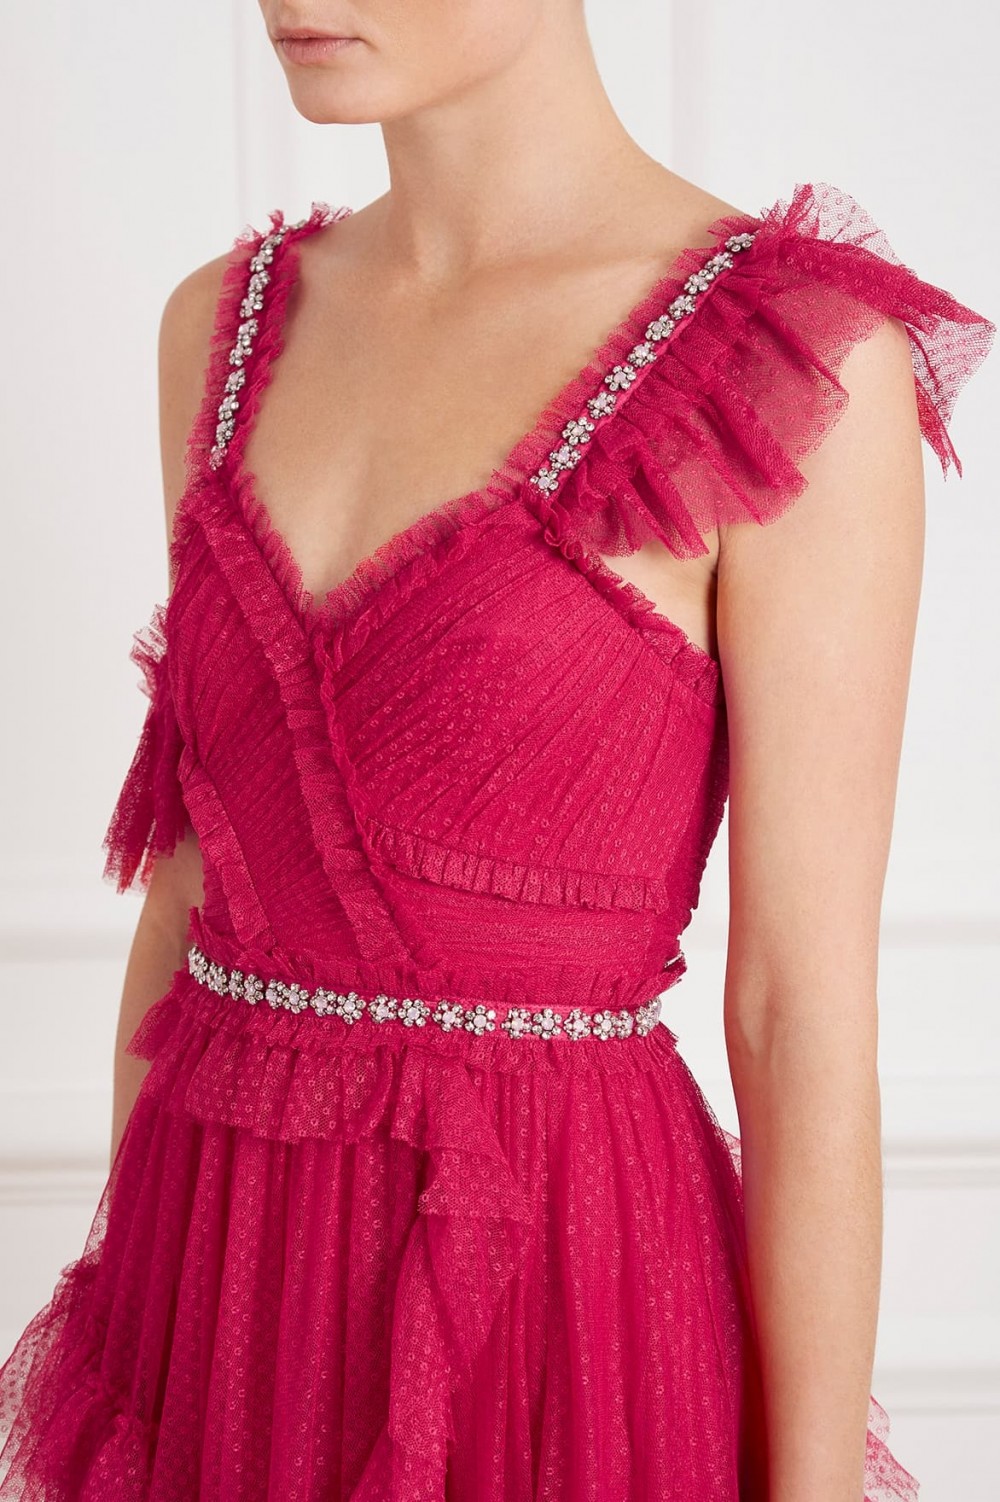 Degas fuscia pink gown